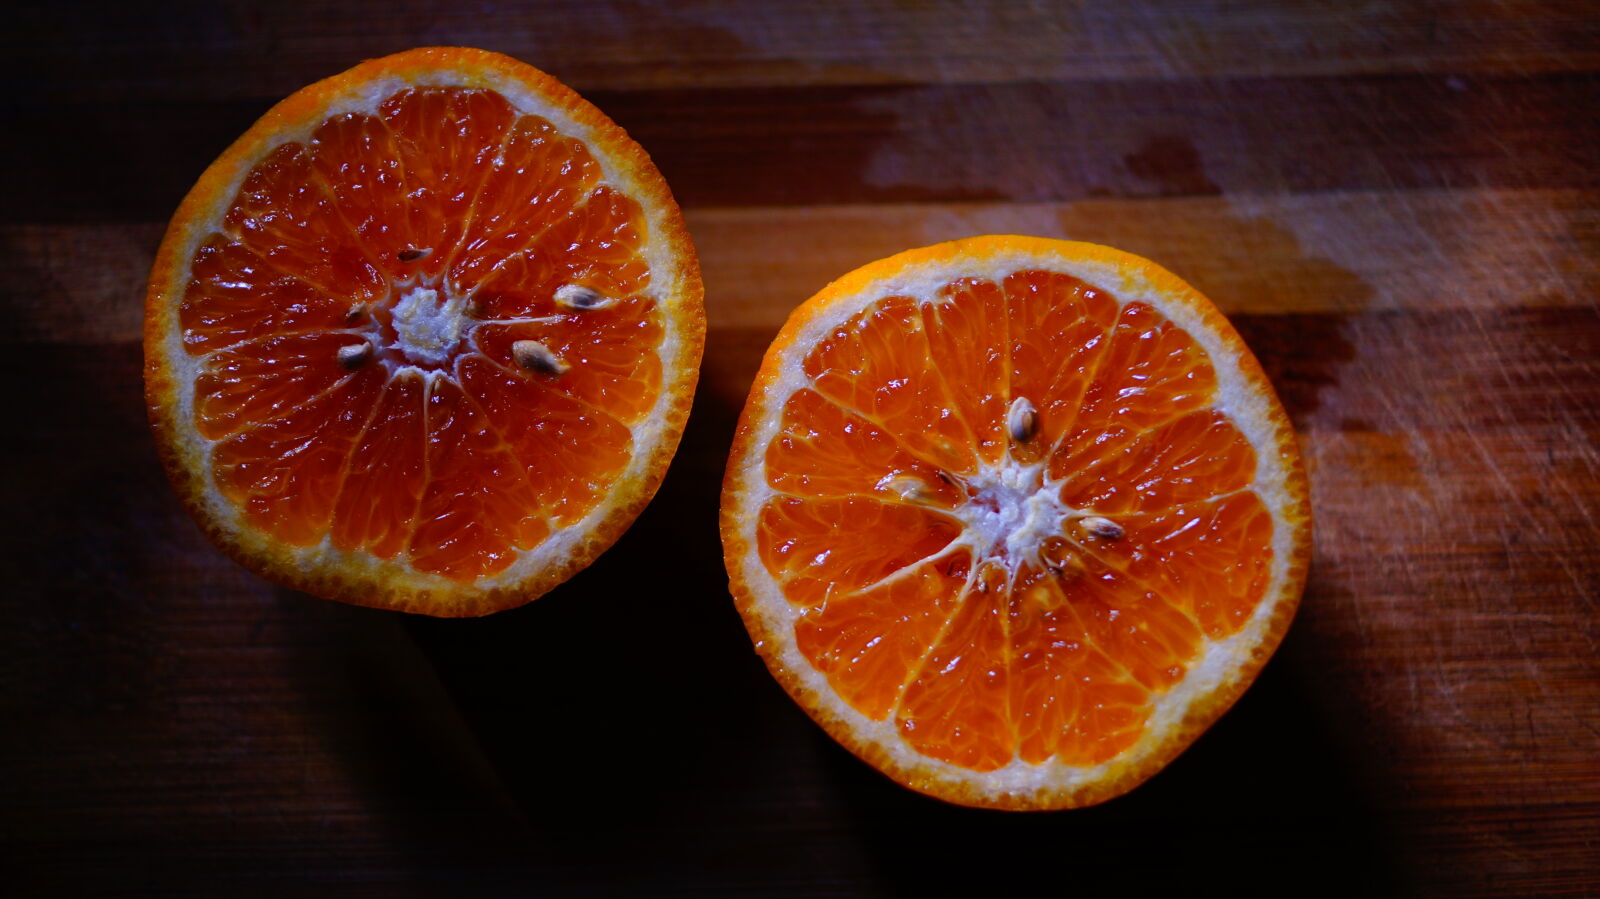 Sony DT 35mm F1.8 SAM sample photo. Fruits, orange, orange, juice photography